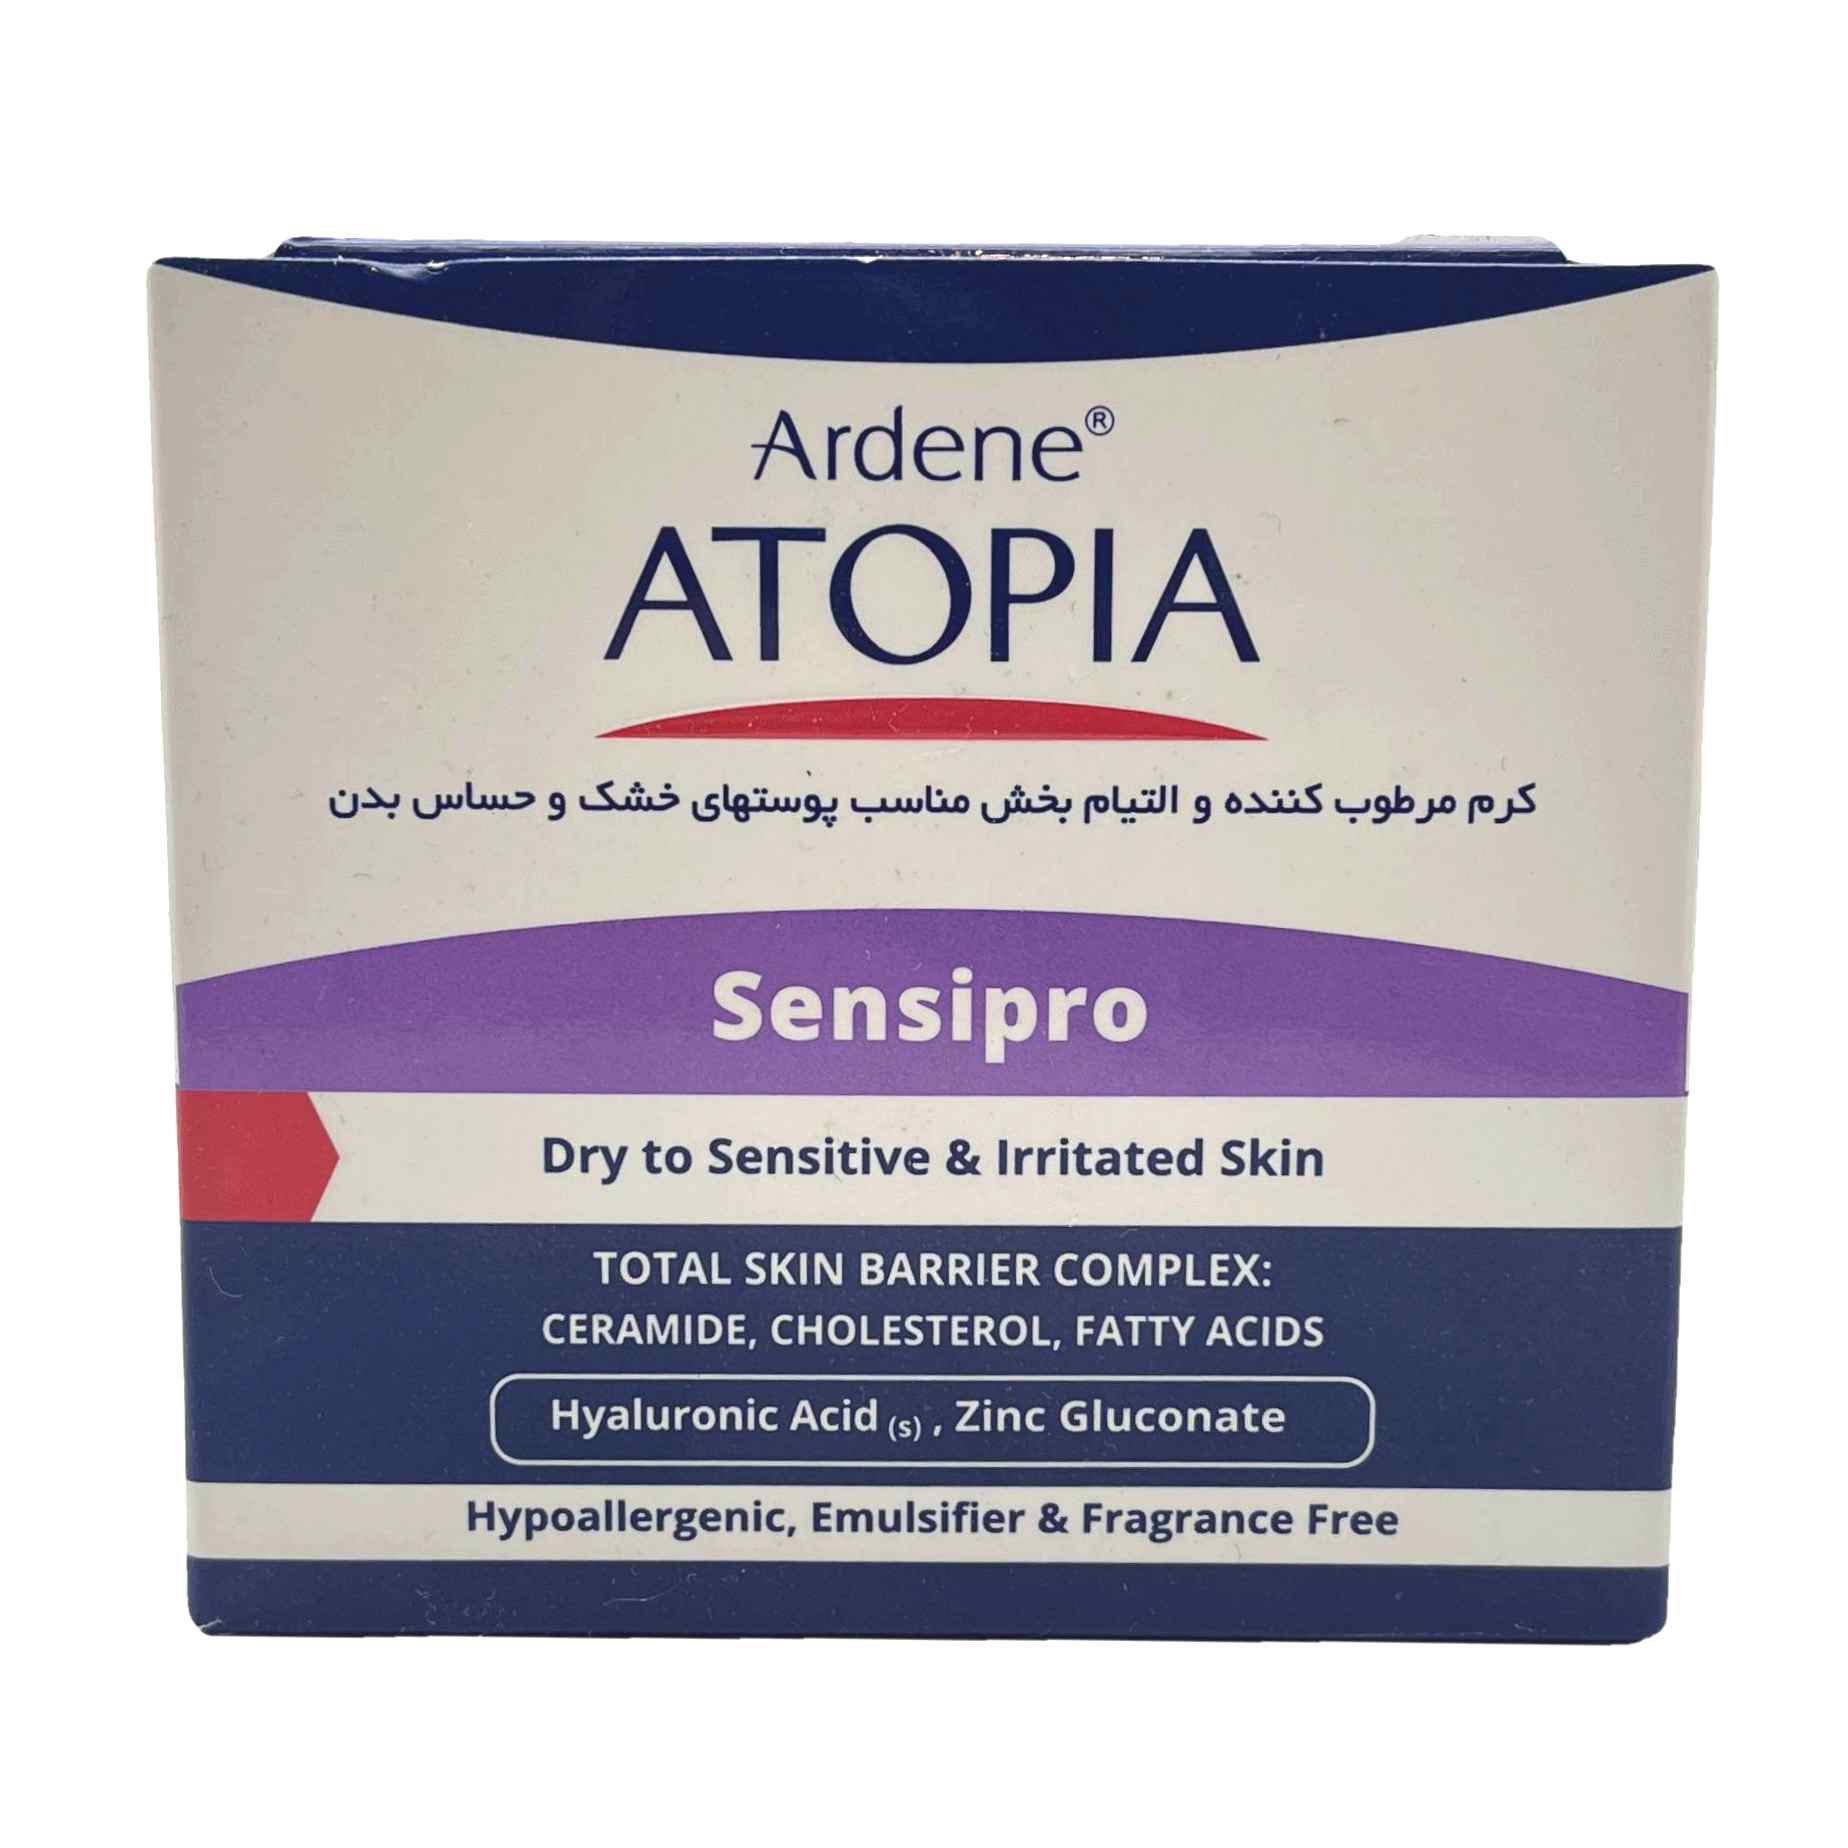 کرم مرطوب کننده و التیام بخش آتوپیا آردن مناسب پوست های خشک و حساس Atopia Ardene